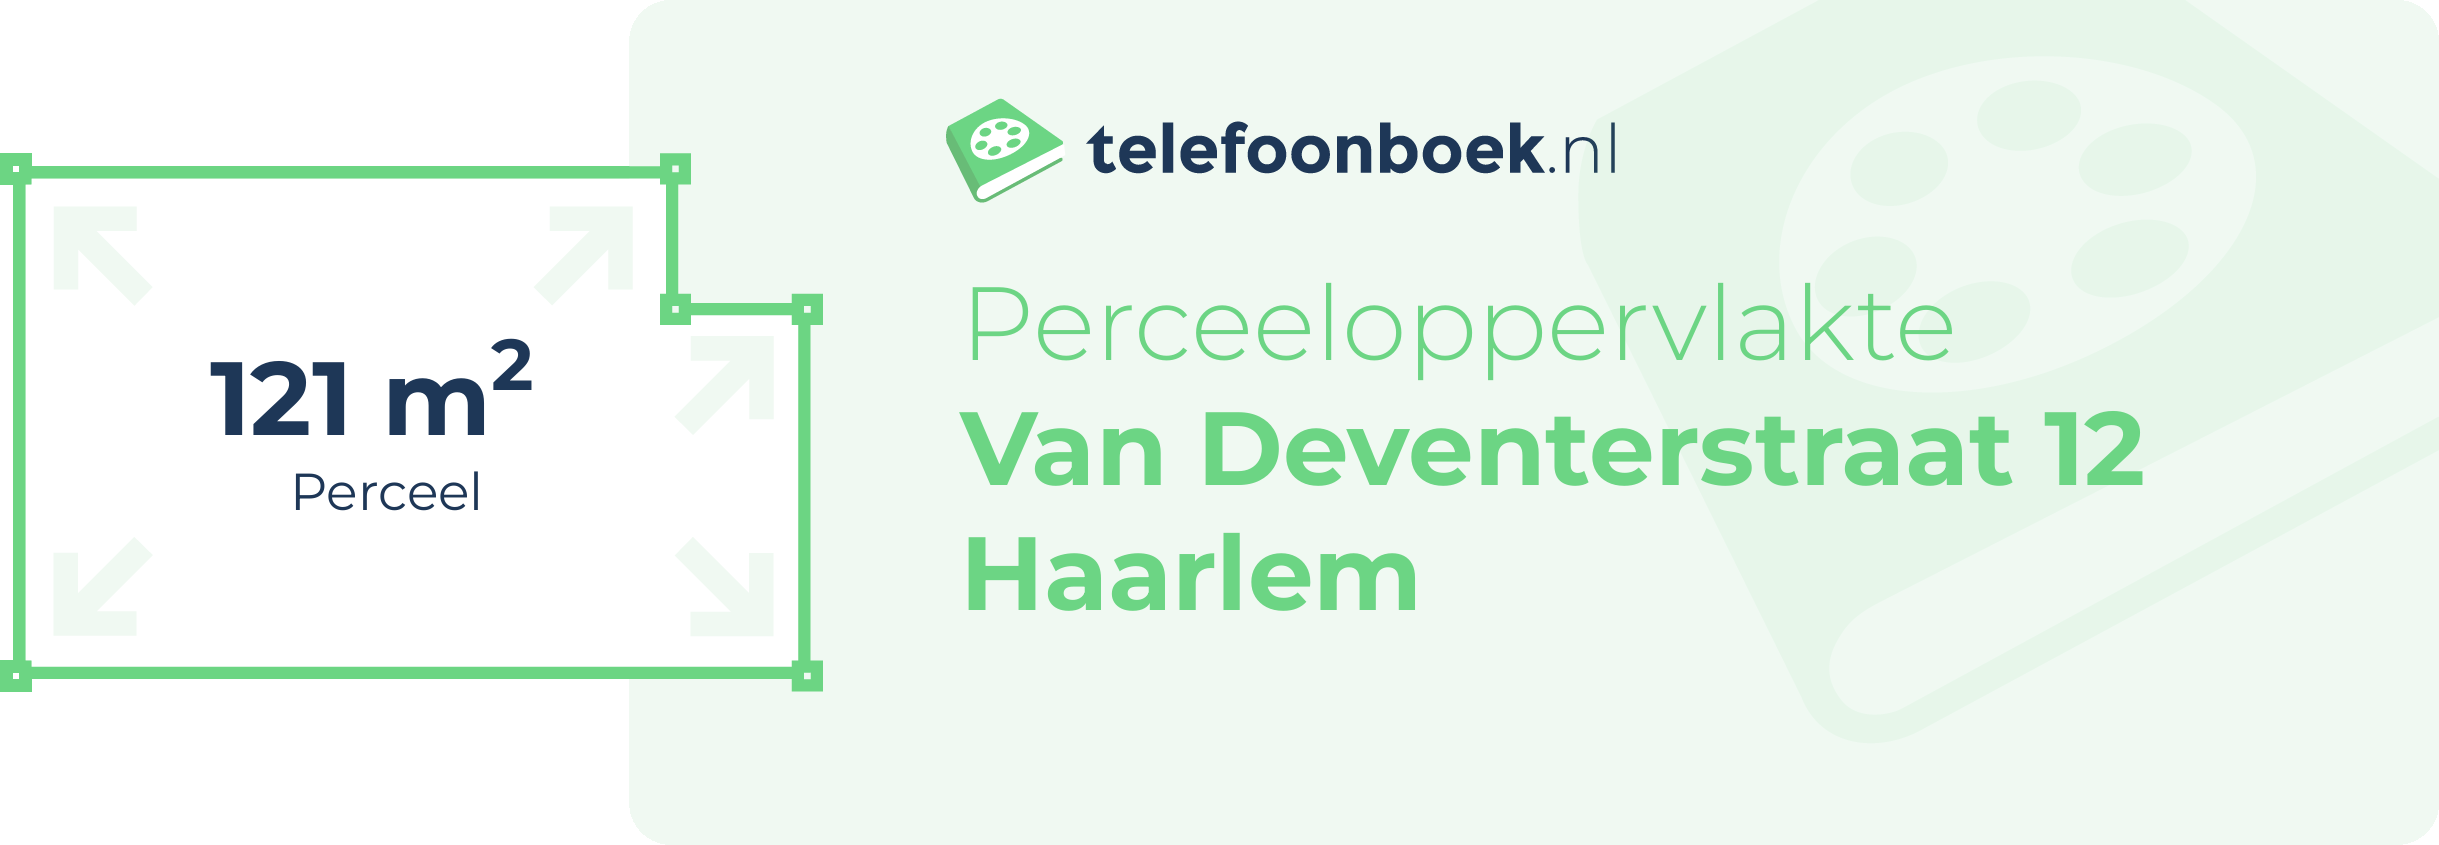 Perceeloppervlakte Van Deventerstraat 12 Haarlem